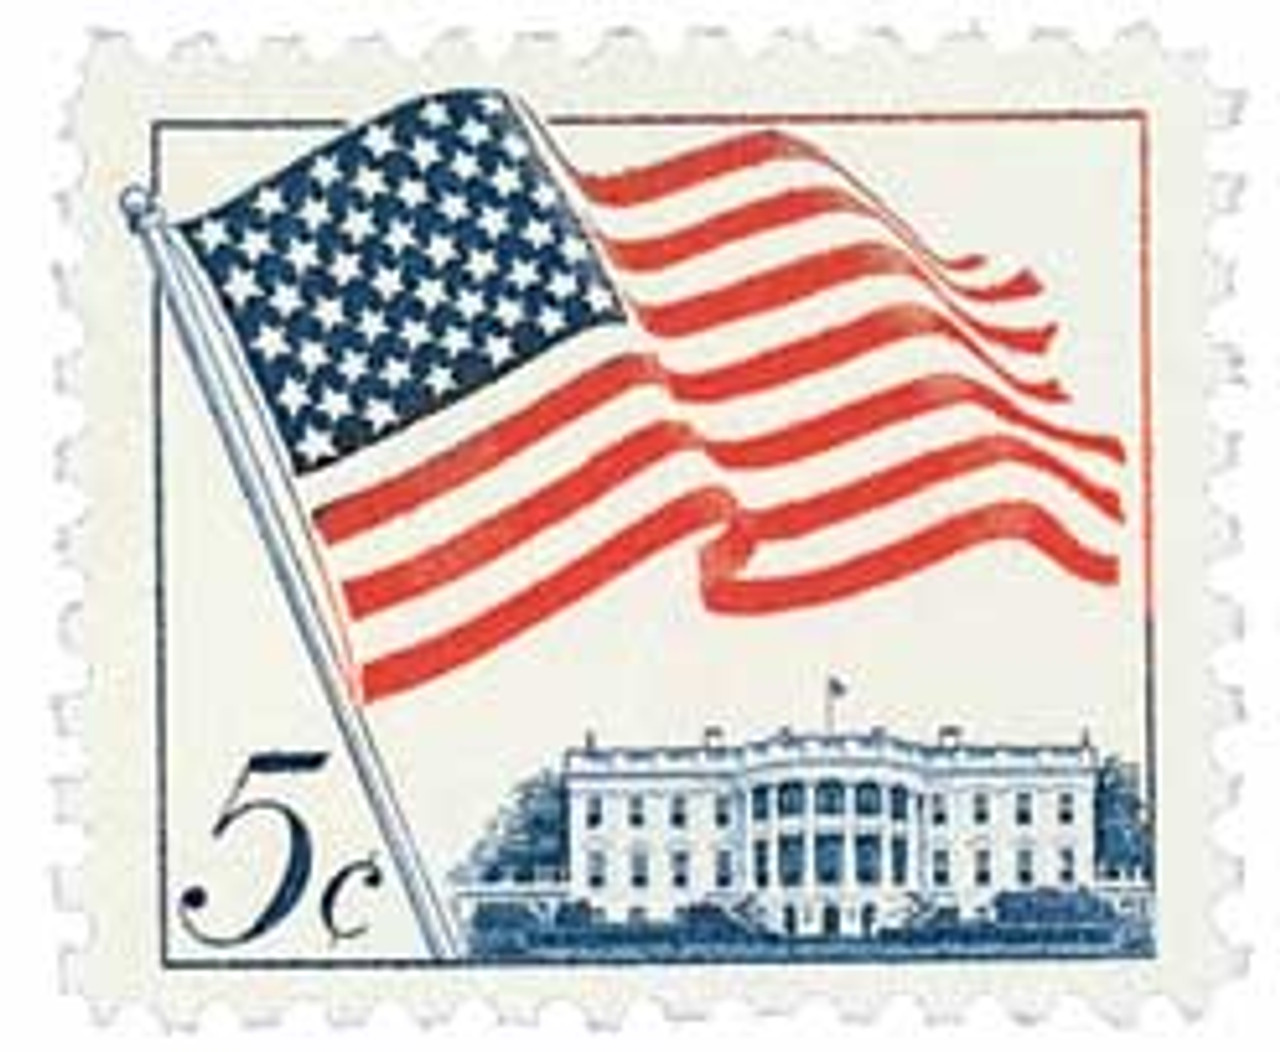 1208 - 1963 5c 50-Star U.S. Flag - Mystic Stamp Company